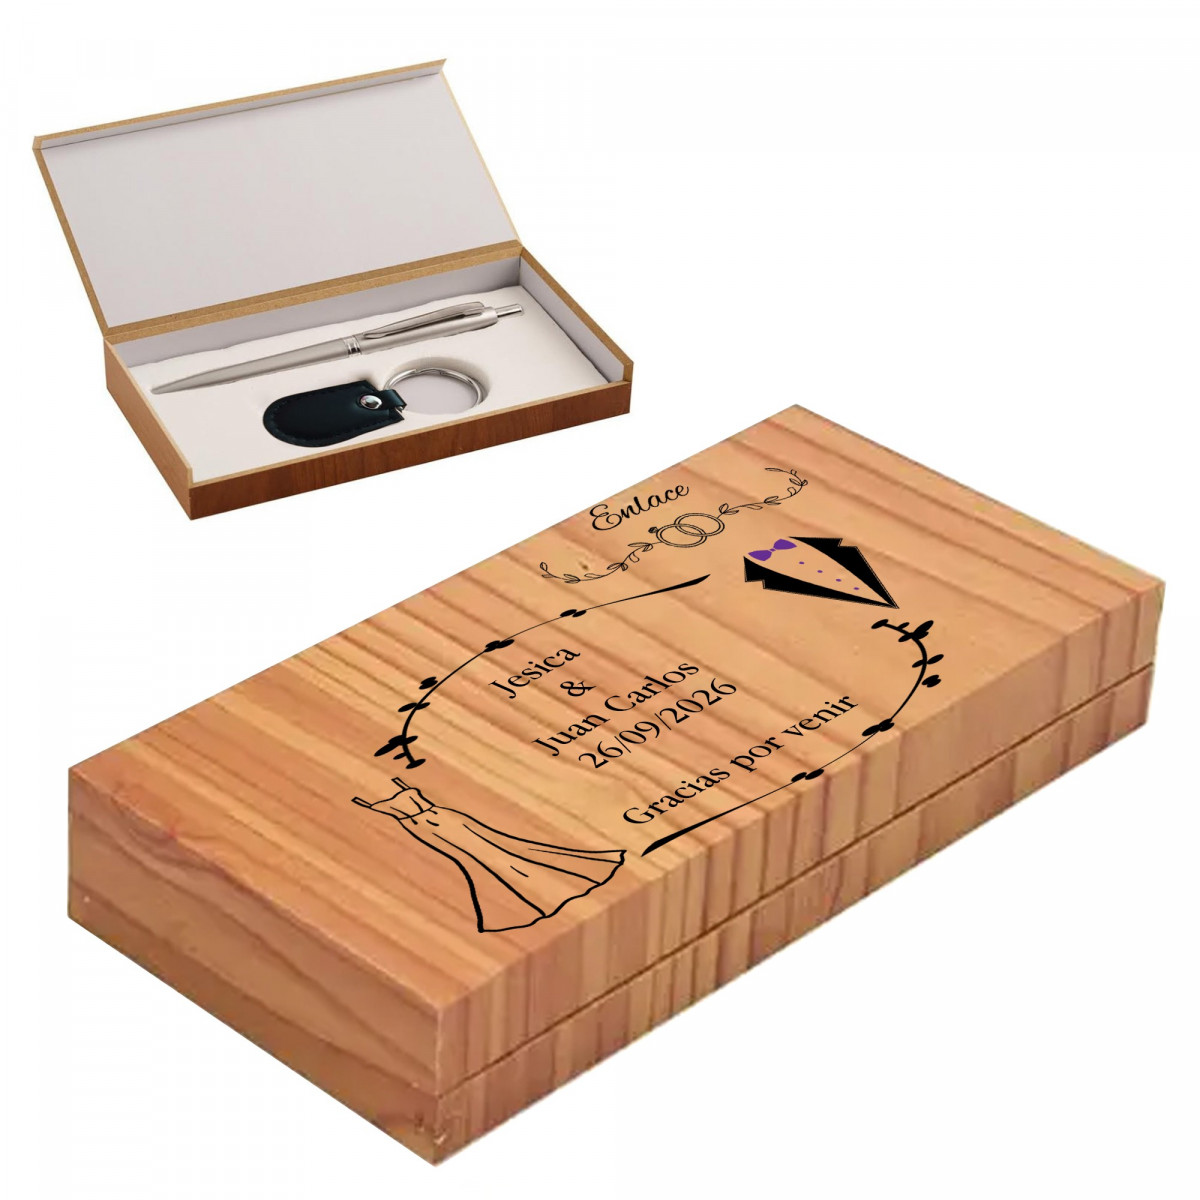 Stylo et porte clés présentés dans une boîte en bois personnalisée pour un mariage avec une phrase de remerciement